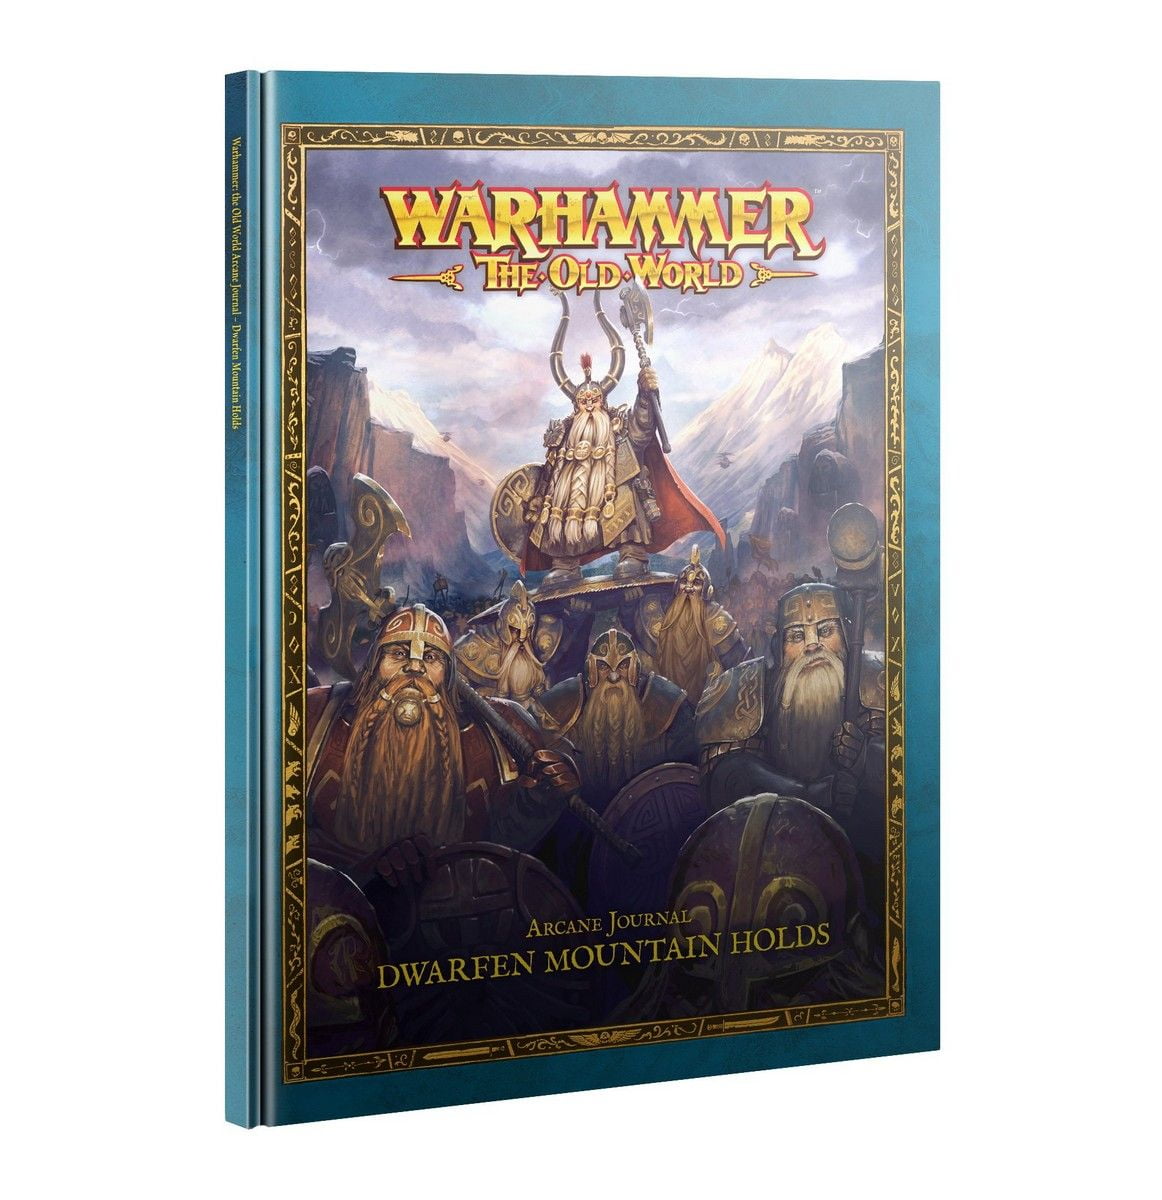 Warhammer: The Old World: Arcane Journal - Dwarfen Mountain Holds